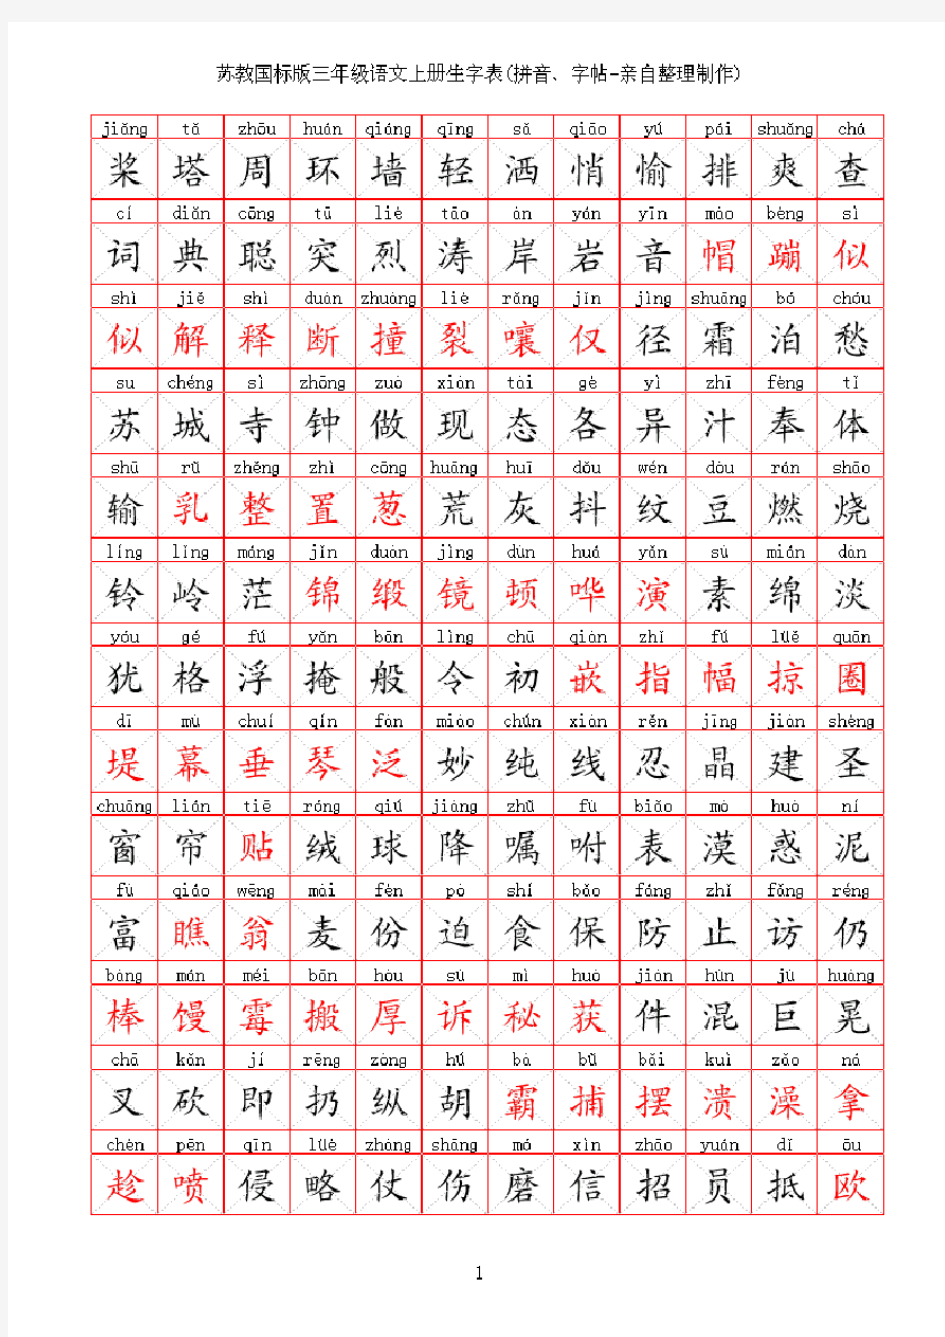 苏教版小学语文三年级生字表(拼音、字帖-亲自整理制作)